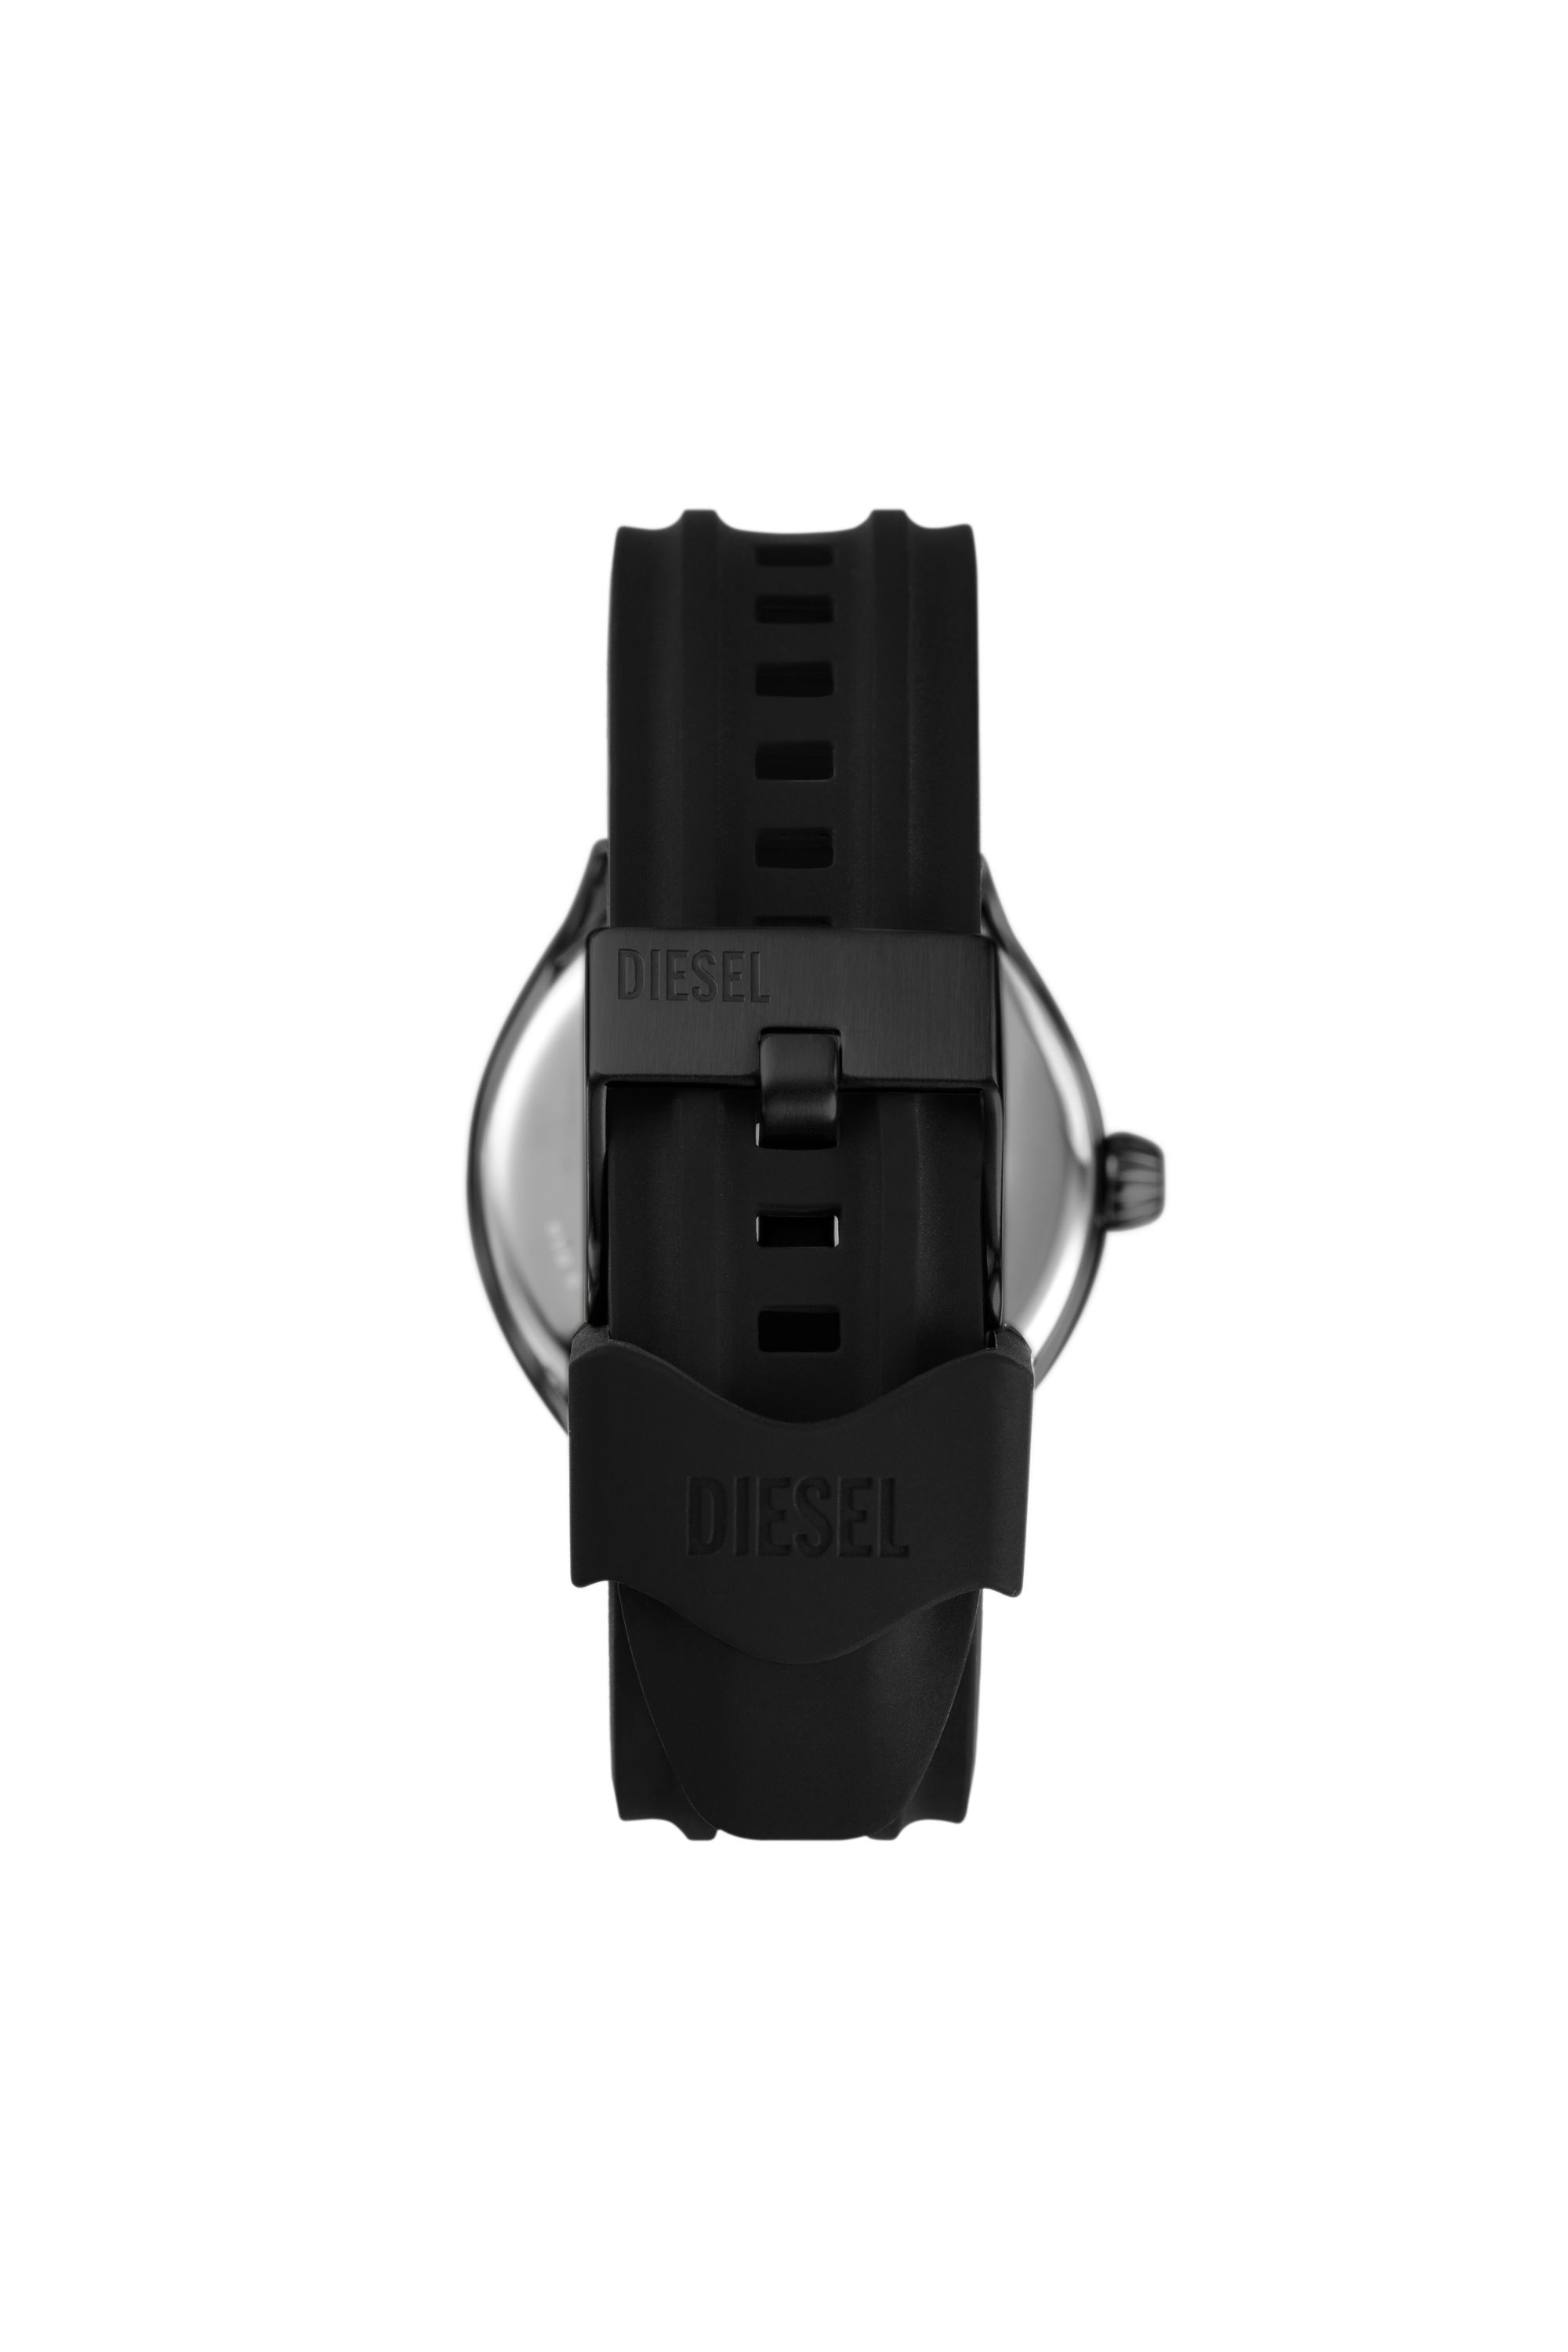 Diesel - DZ2203, Man Streamline three-hand black silicone watch in Black - Image 2